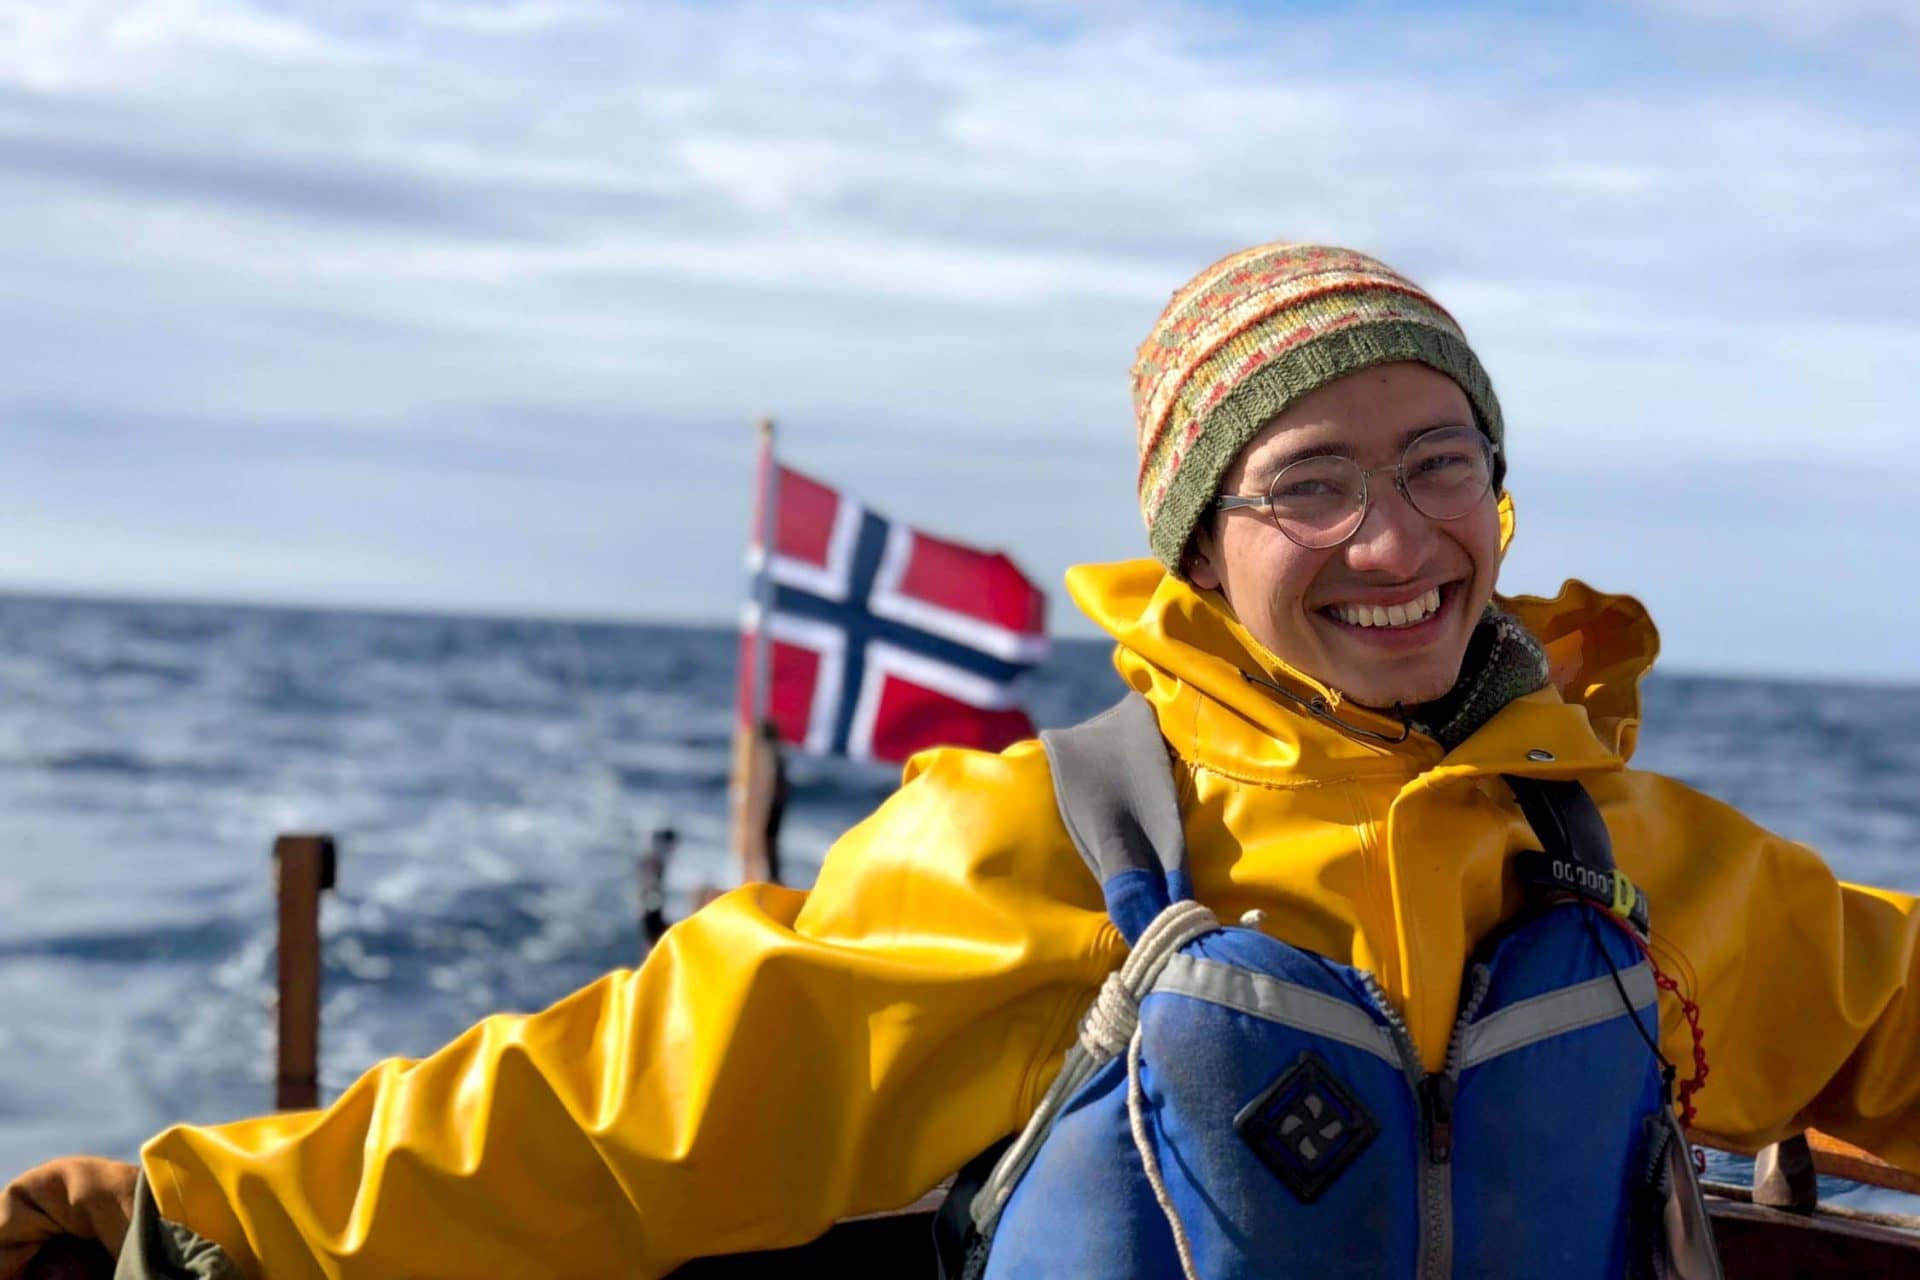 En glad elev med regntoy og flytevest styrer seilbaten i frisk vind. Det norske flagget i bakgrunnen.